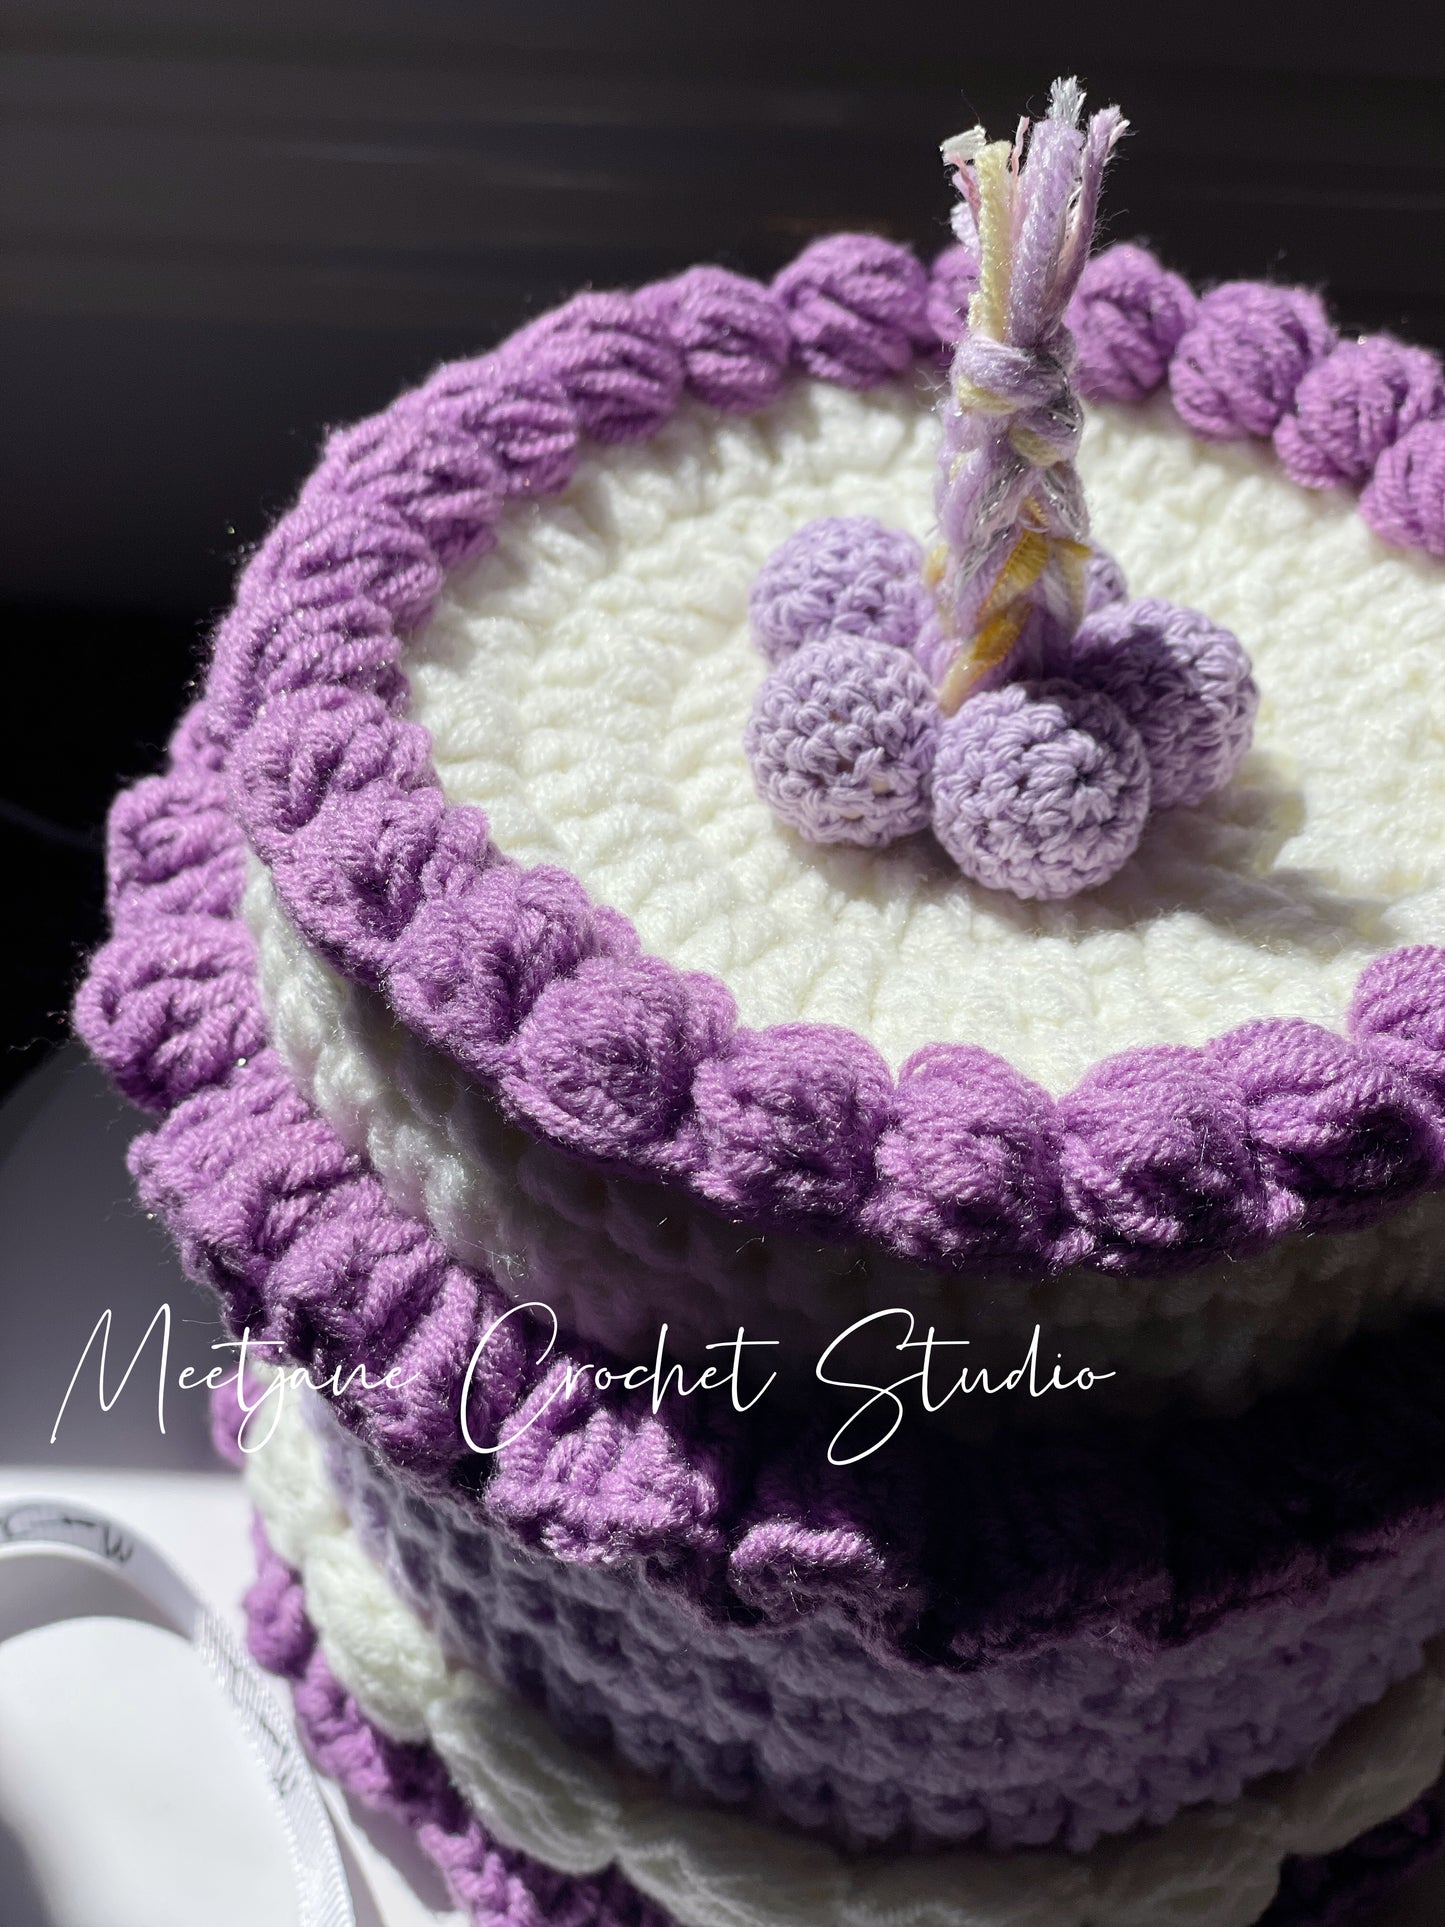 Crochet gift|Melbourne handmade|Birthday cake storage box|Taro